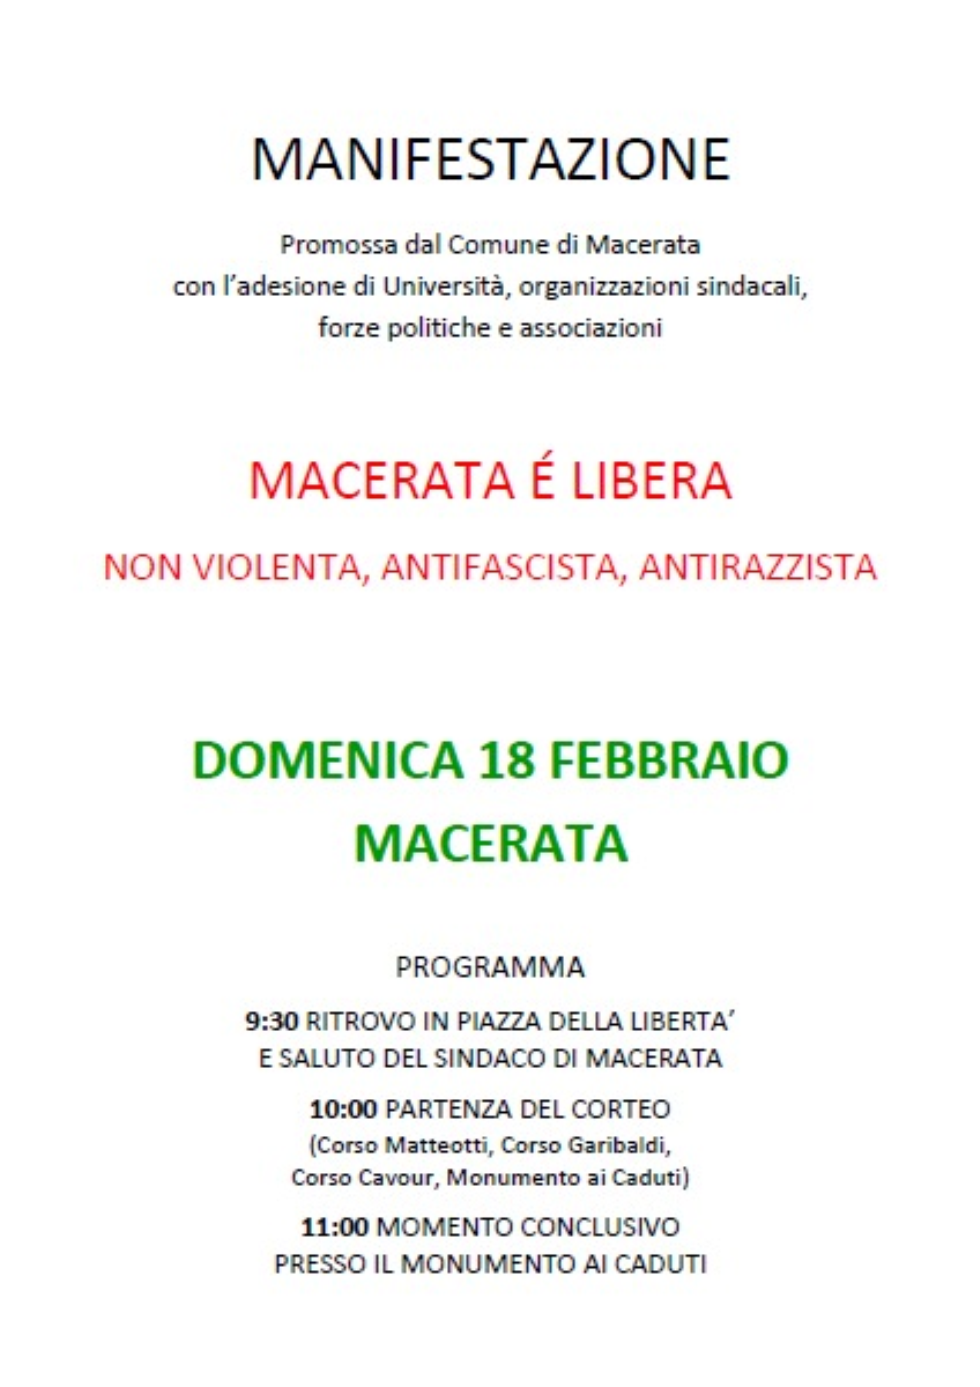 Anteas  insieme alla Cisl aderisce convintamente alla manifestazione non violenta, antifascista e antirazzista di domenica 18 febbraio a Macerata 